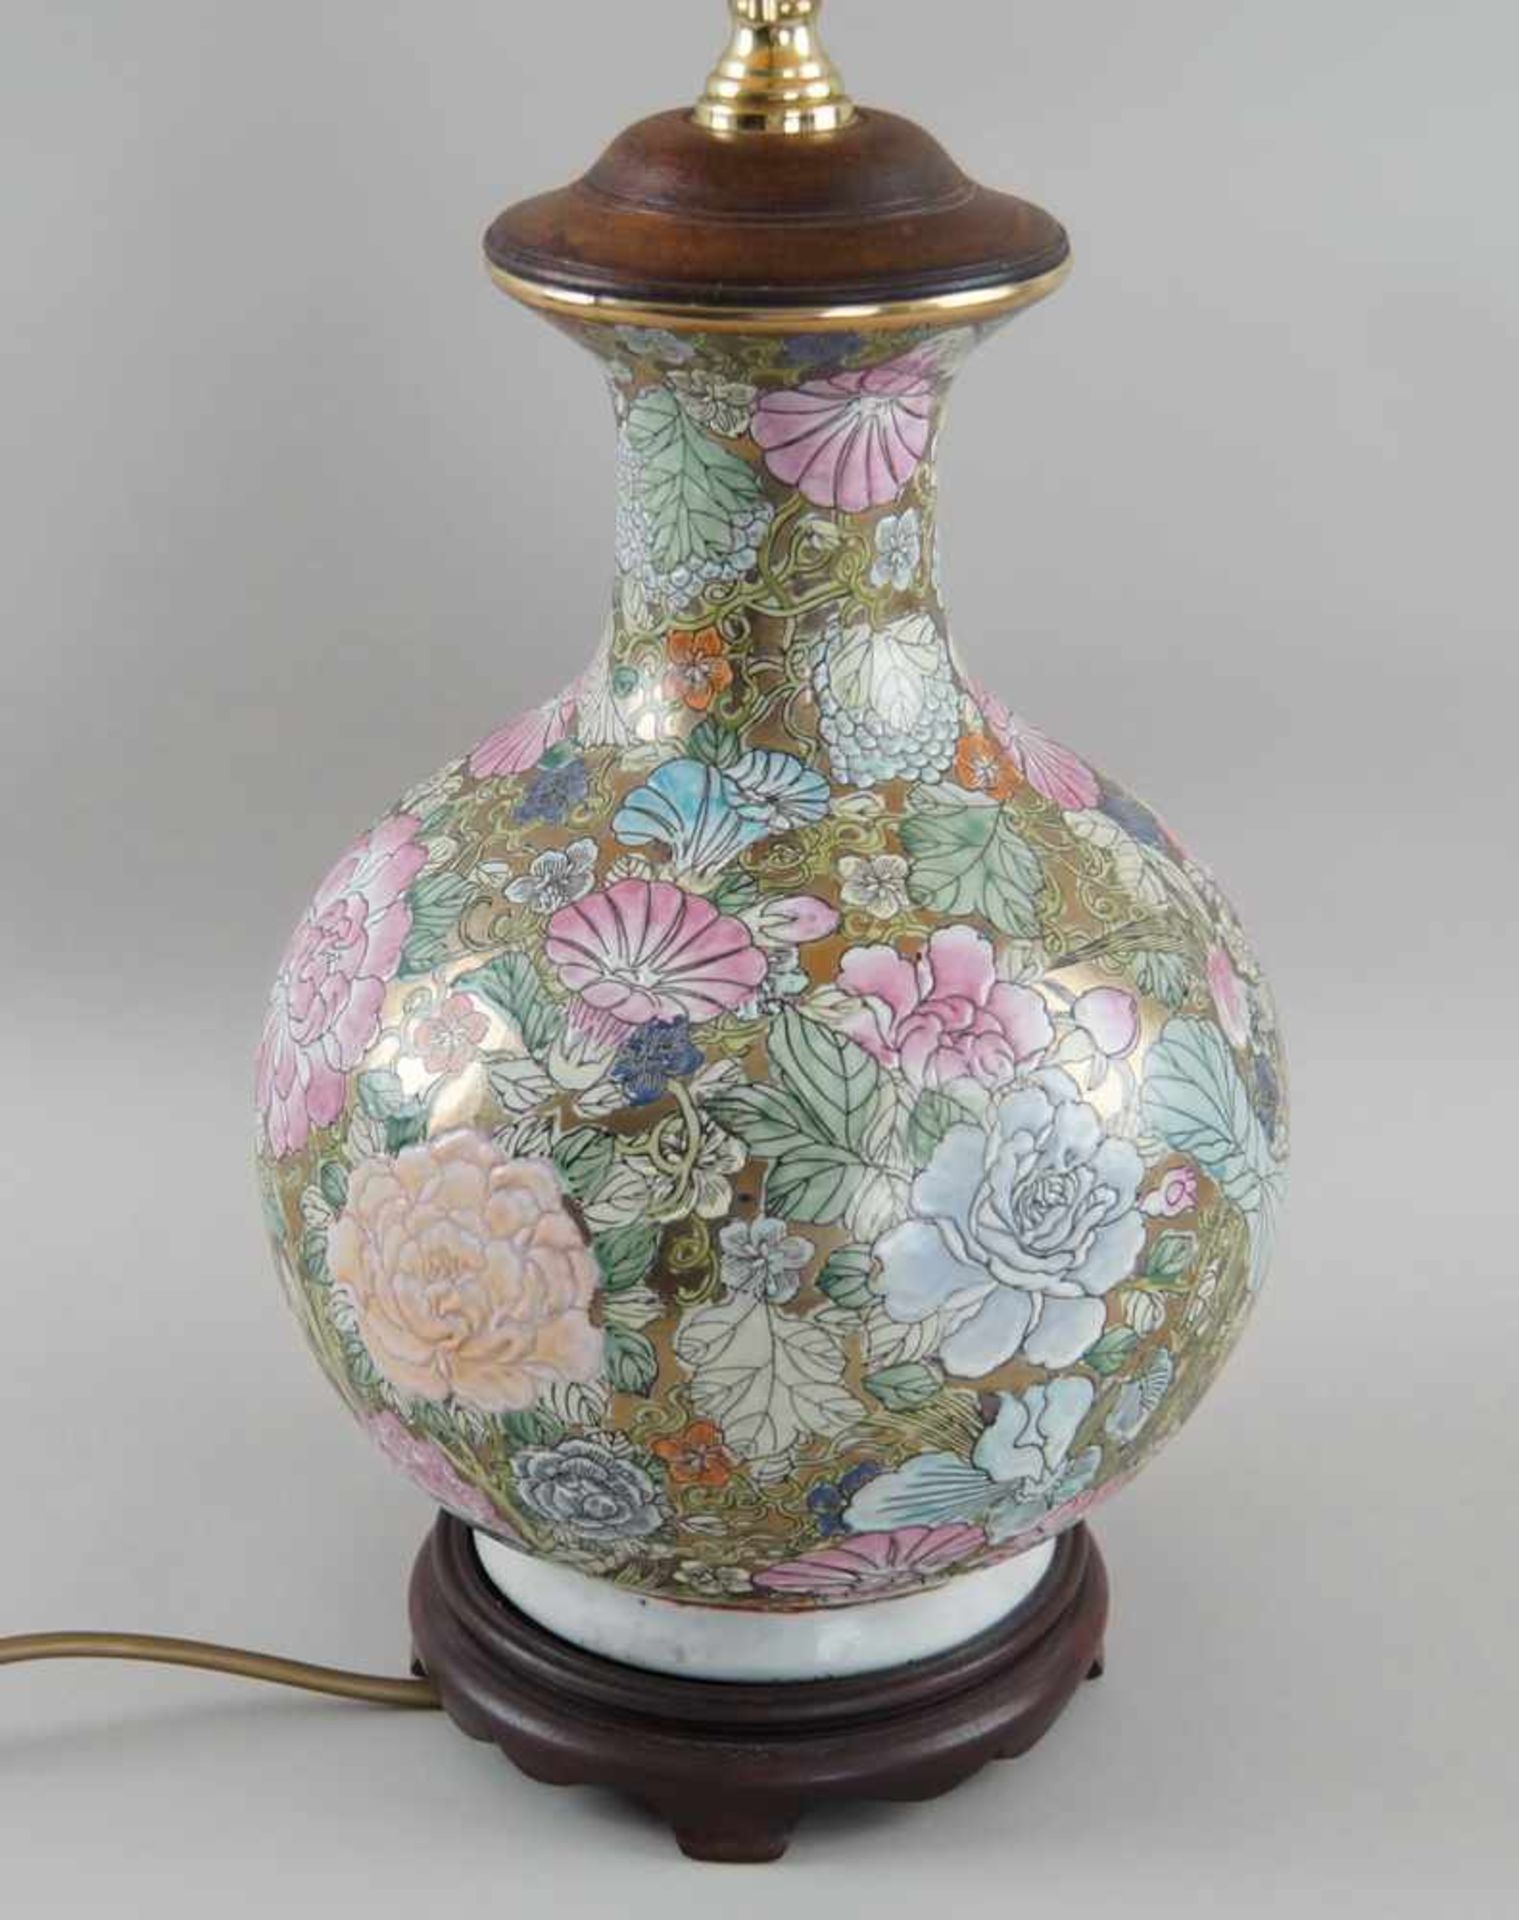 Tischlampe, ehem. asiatische Vase, auf Holzstand, elektrifiziert, mit Schirm, H 90 cm - Bild 3 aus 6